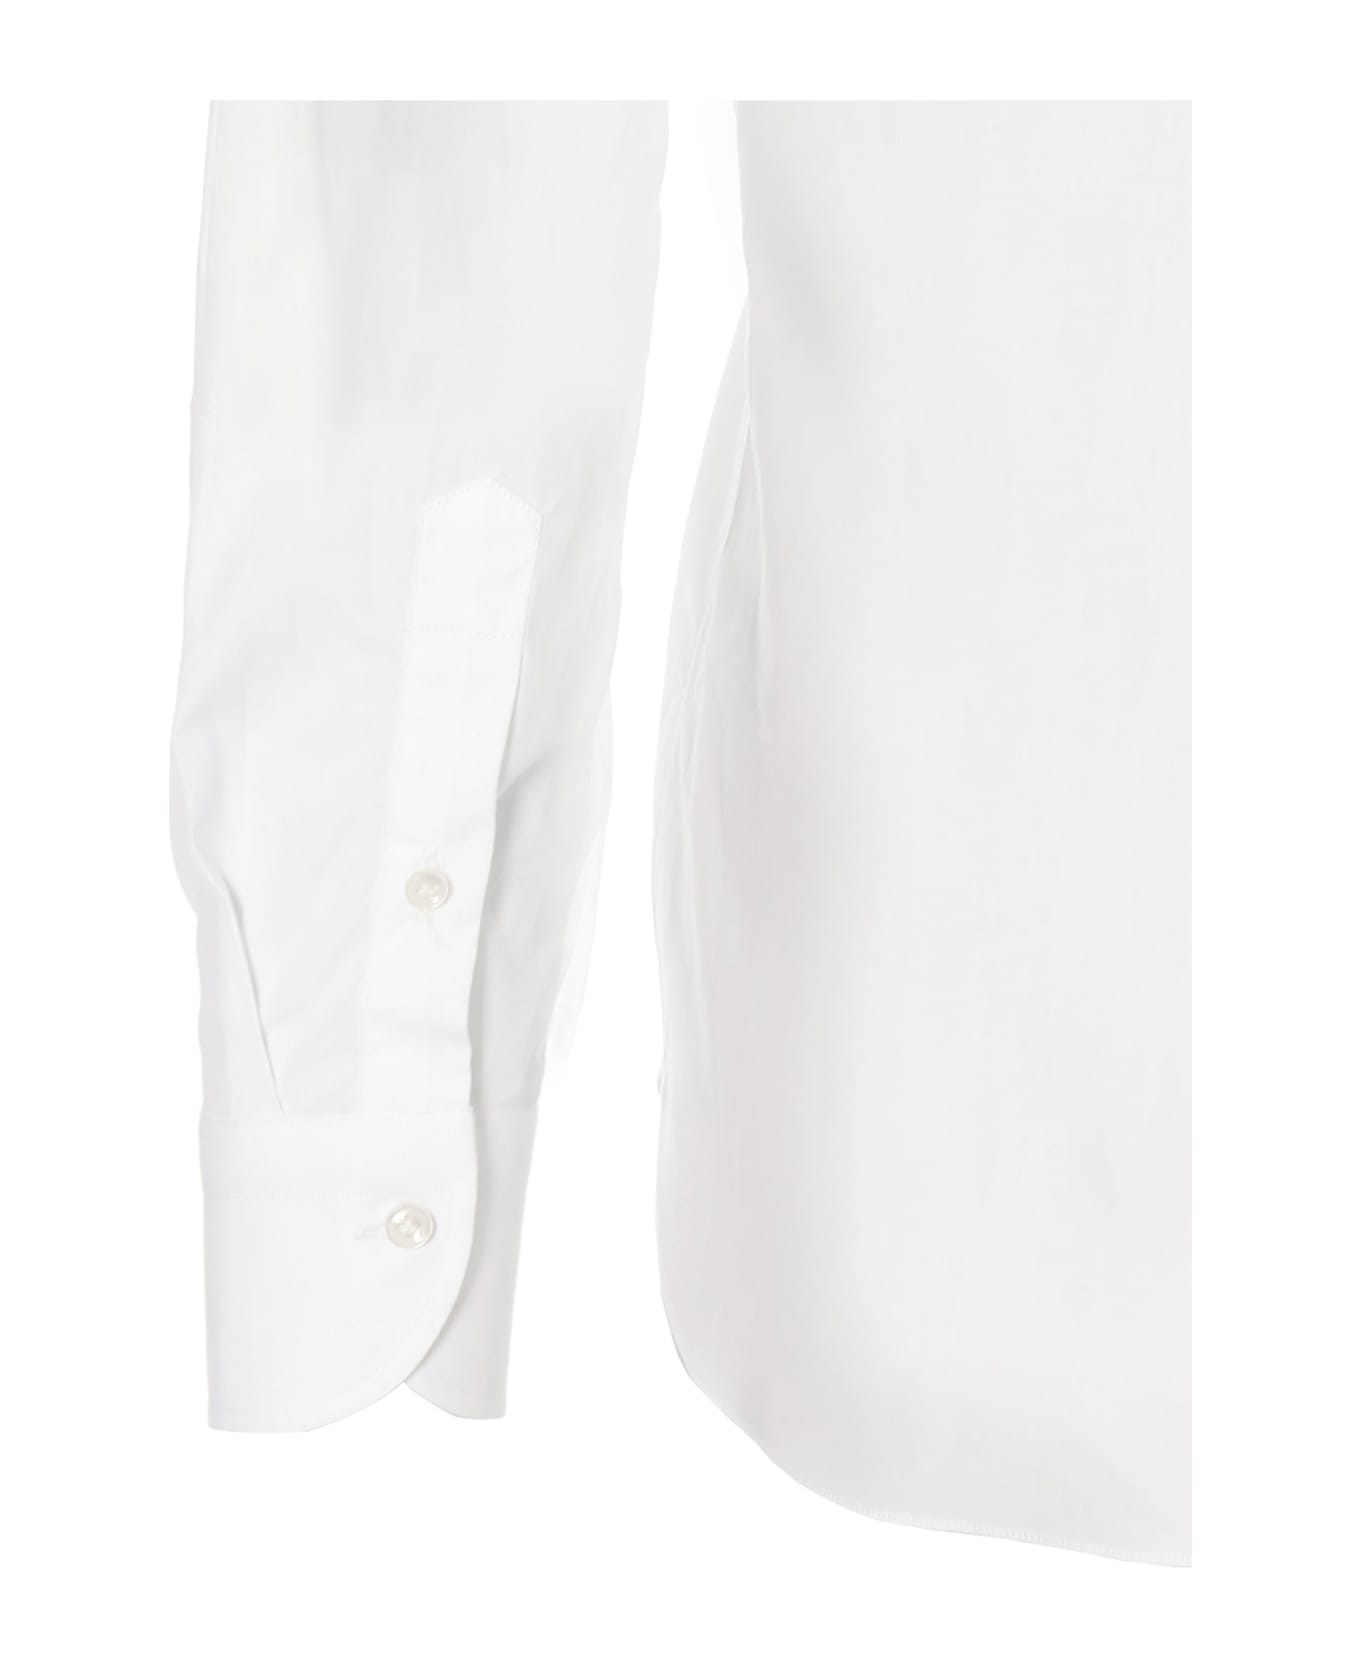 Borriello Napoli 'marechiaro' Shirt - White